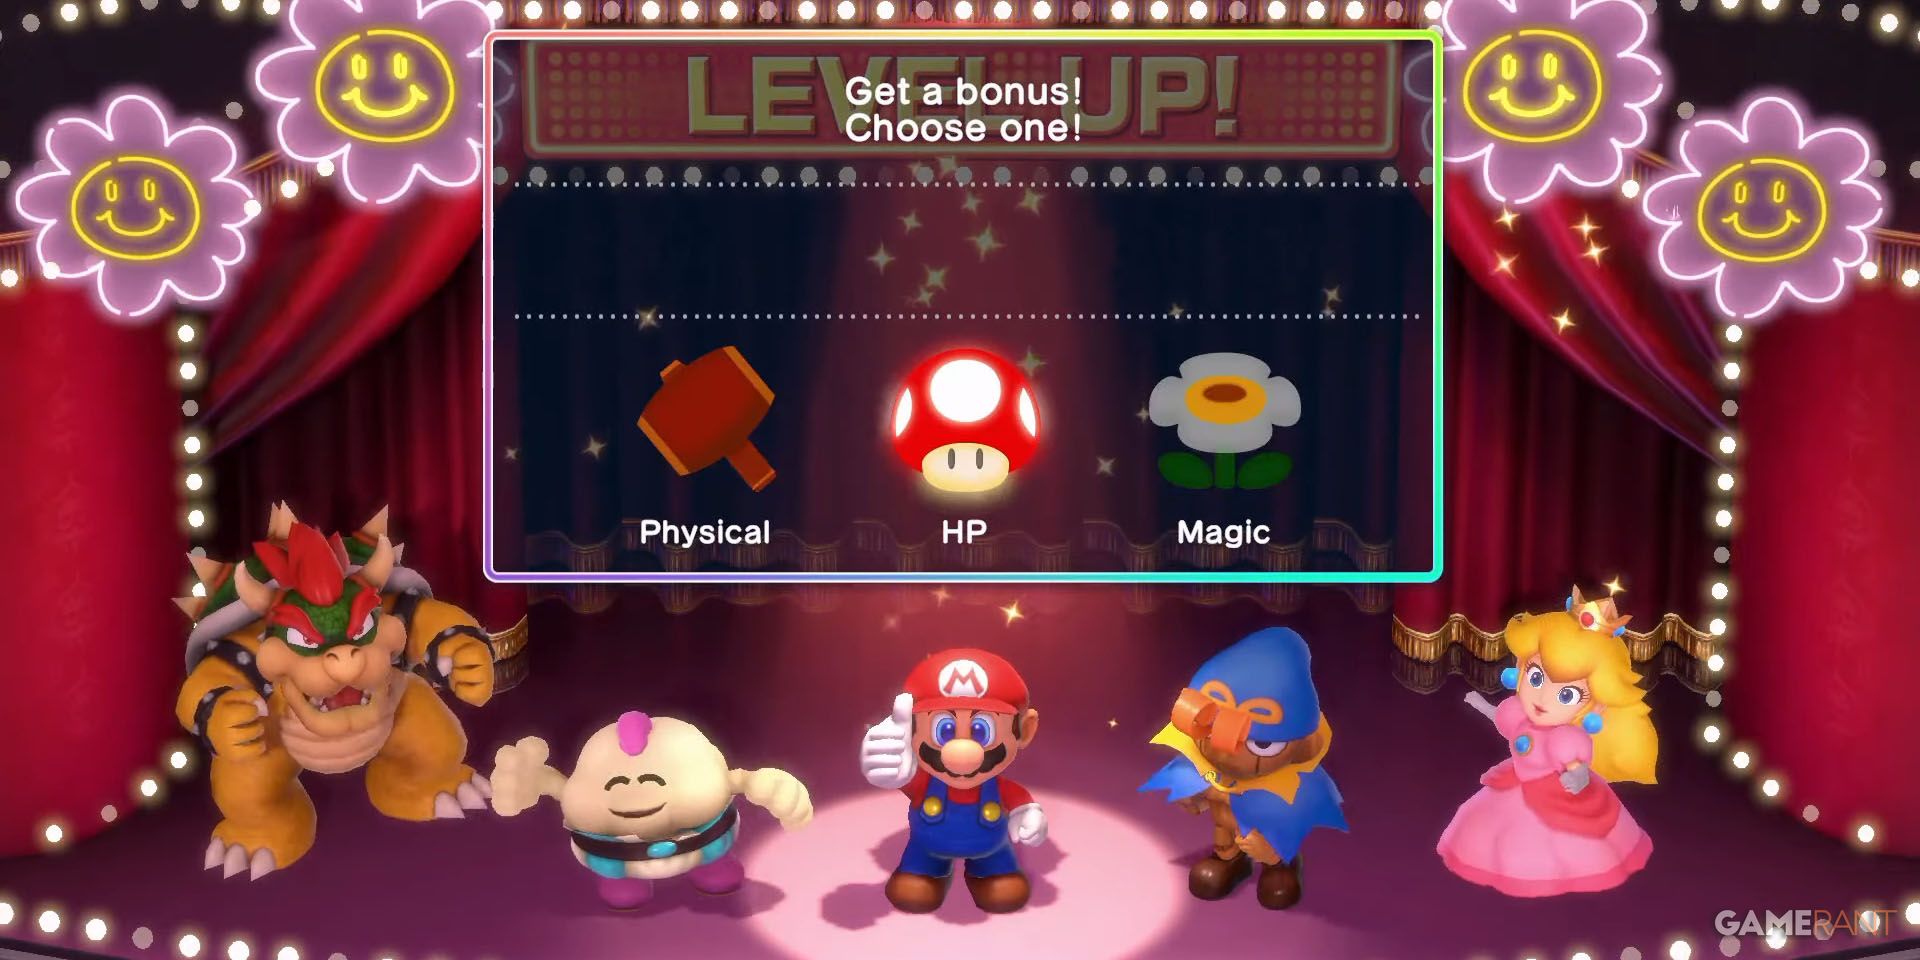 Mario levels up in Super Mario RPG